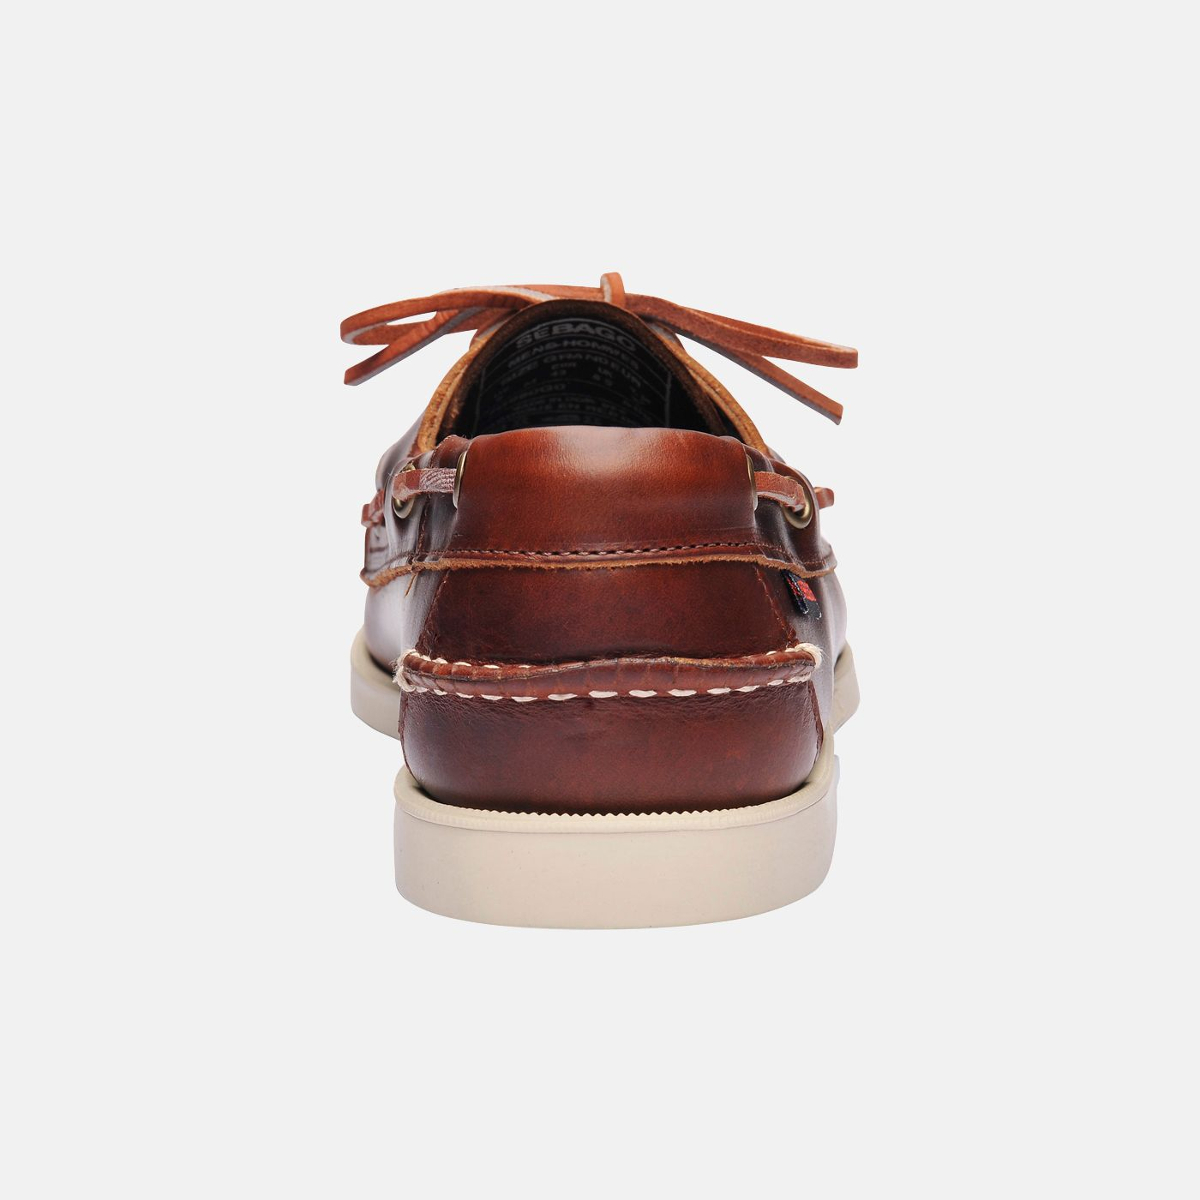 Sebago Docksides bootschoen heren brown oiled waxy leather, maat EU 44.5 (US 10.5)